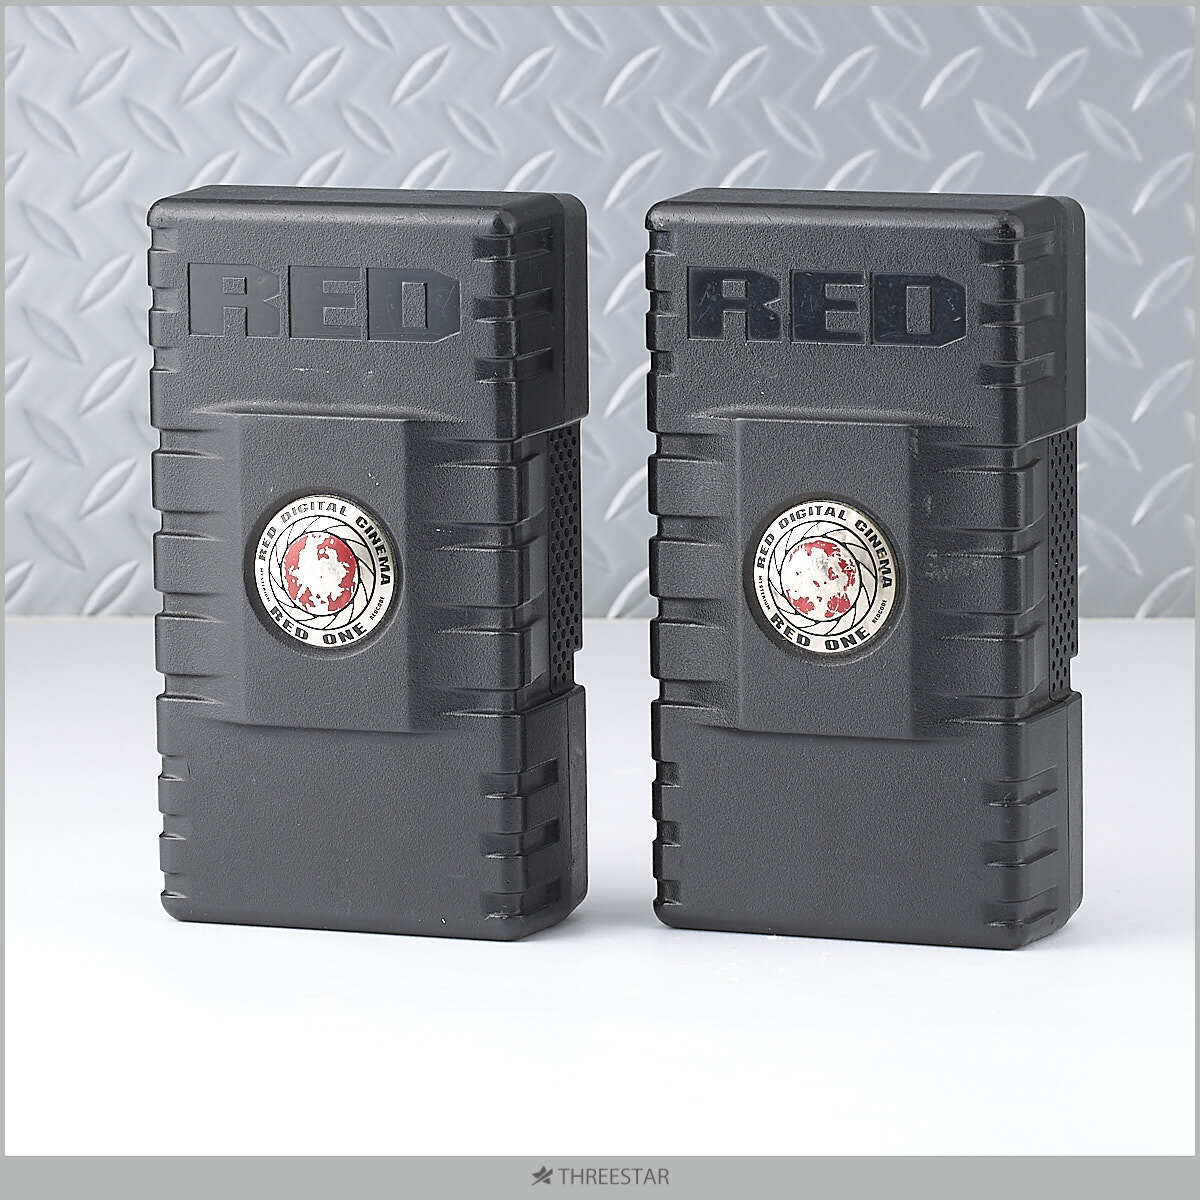 RED CVTR2 2ch リチウムイオンバッテリーチャージャー おまけ バッテリー1+1個付き Vマウント 【1】_画像4